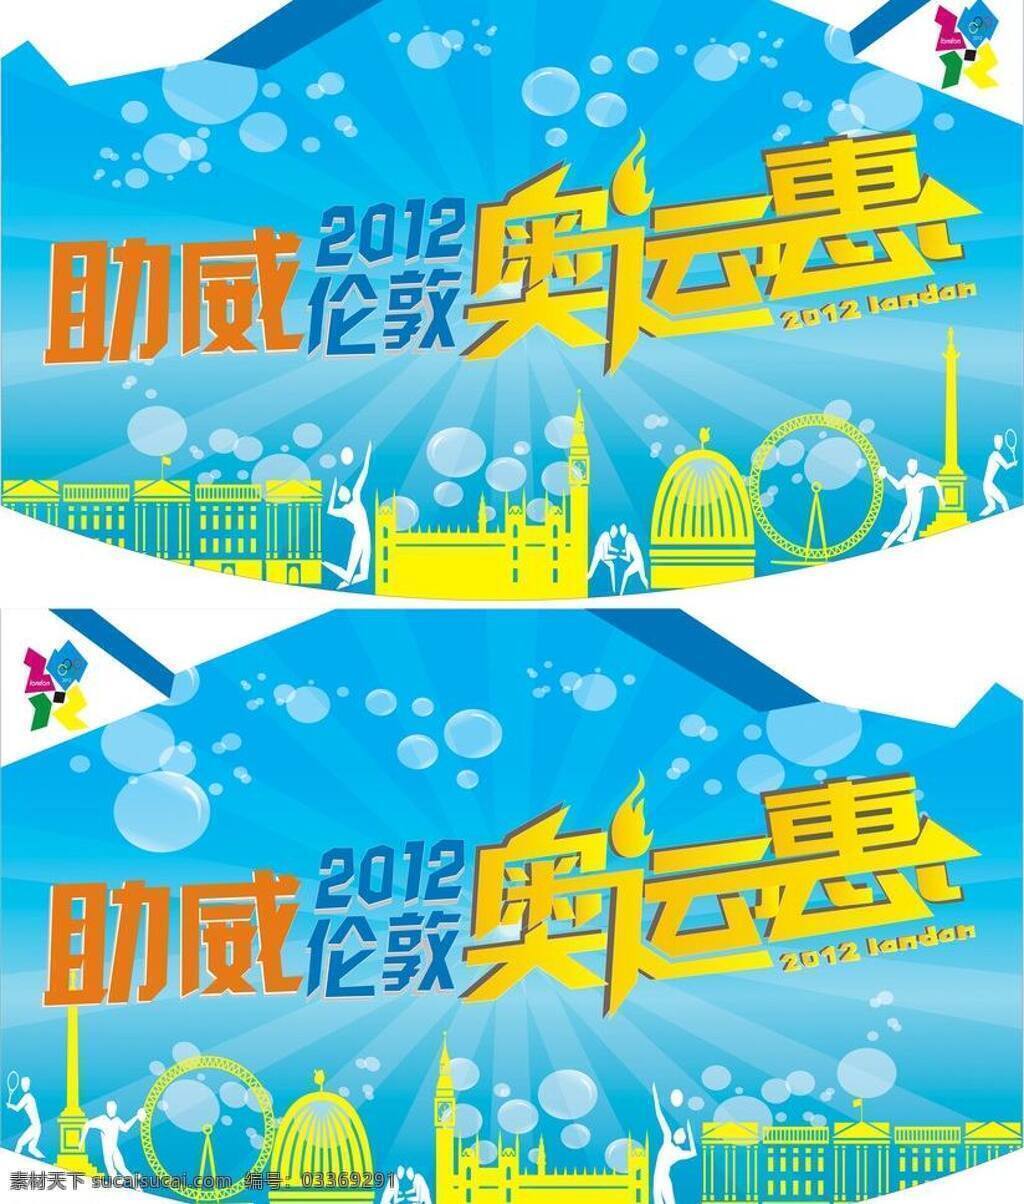 奥运 吊牌 2012 伦敦 奥运吊牌 奥运惠 助威 矢量 其他海报设计